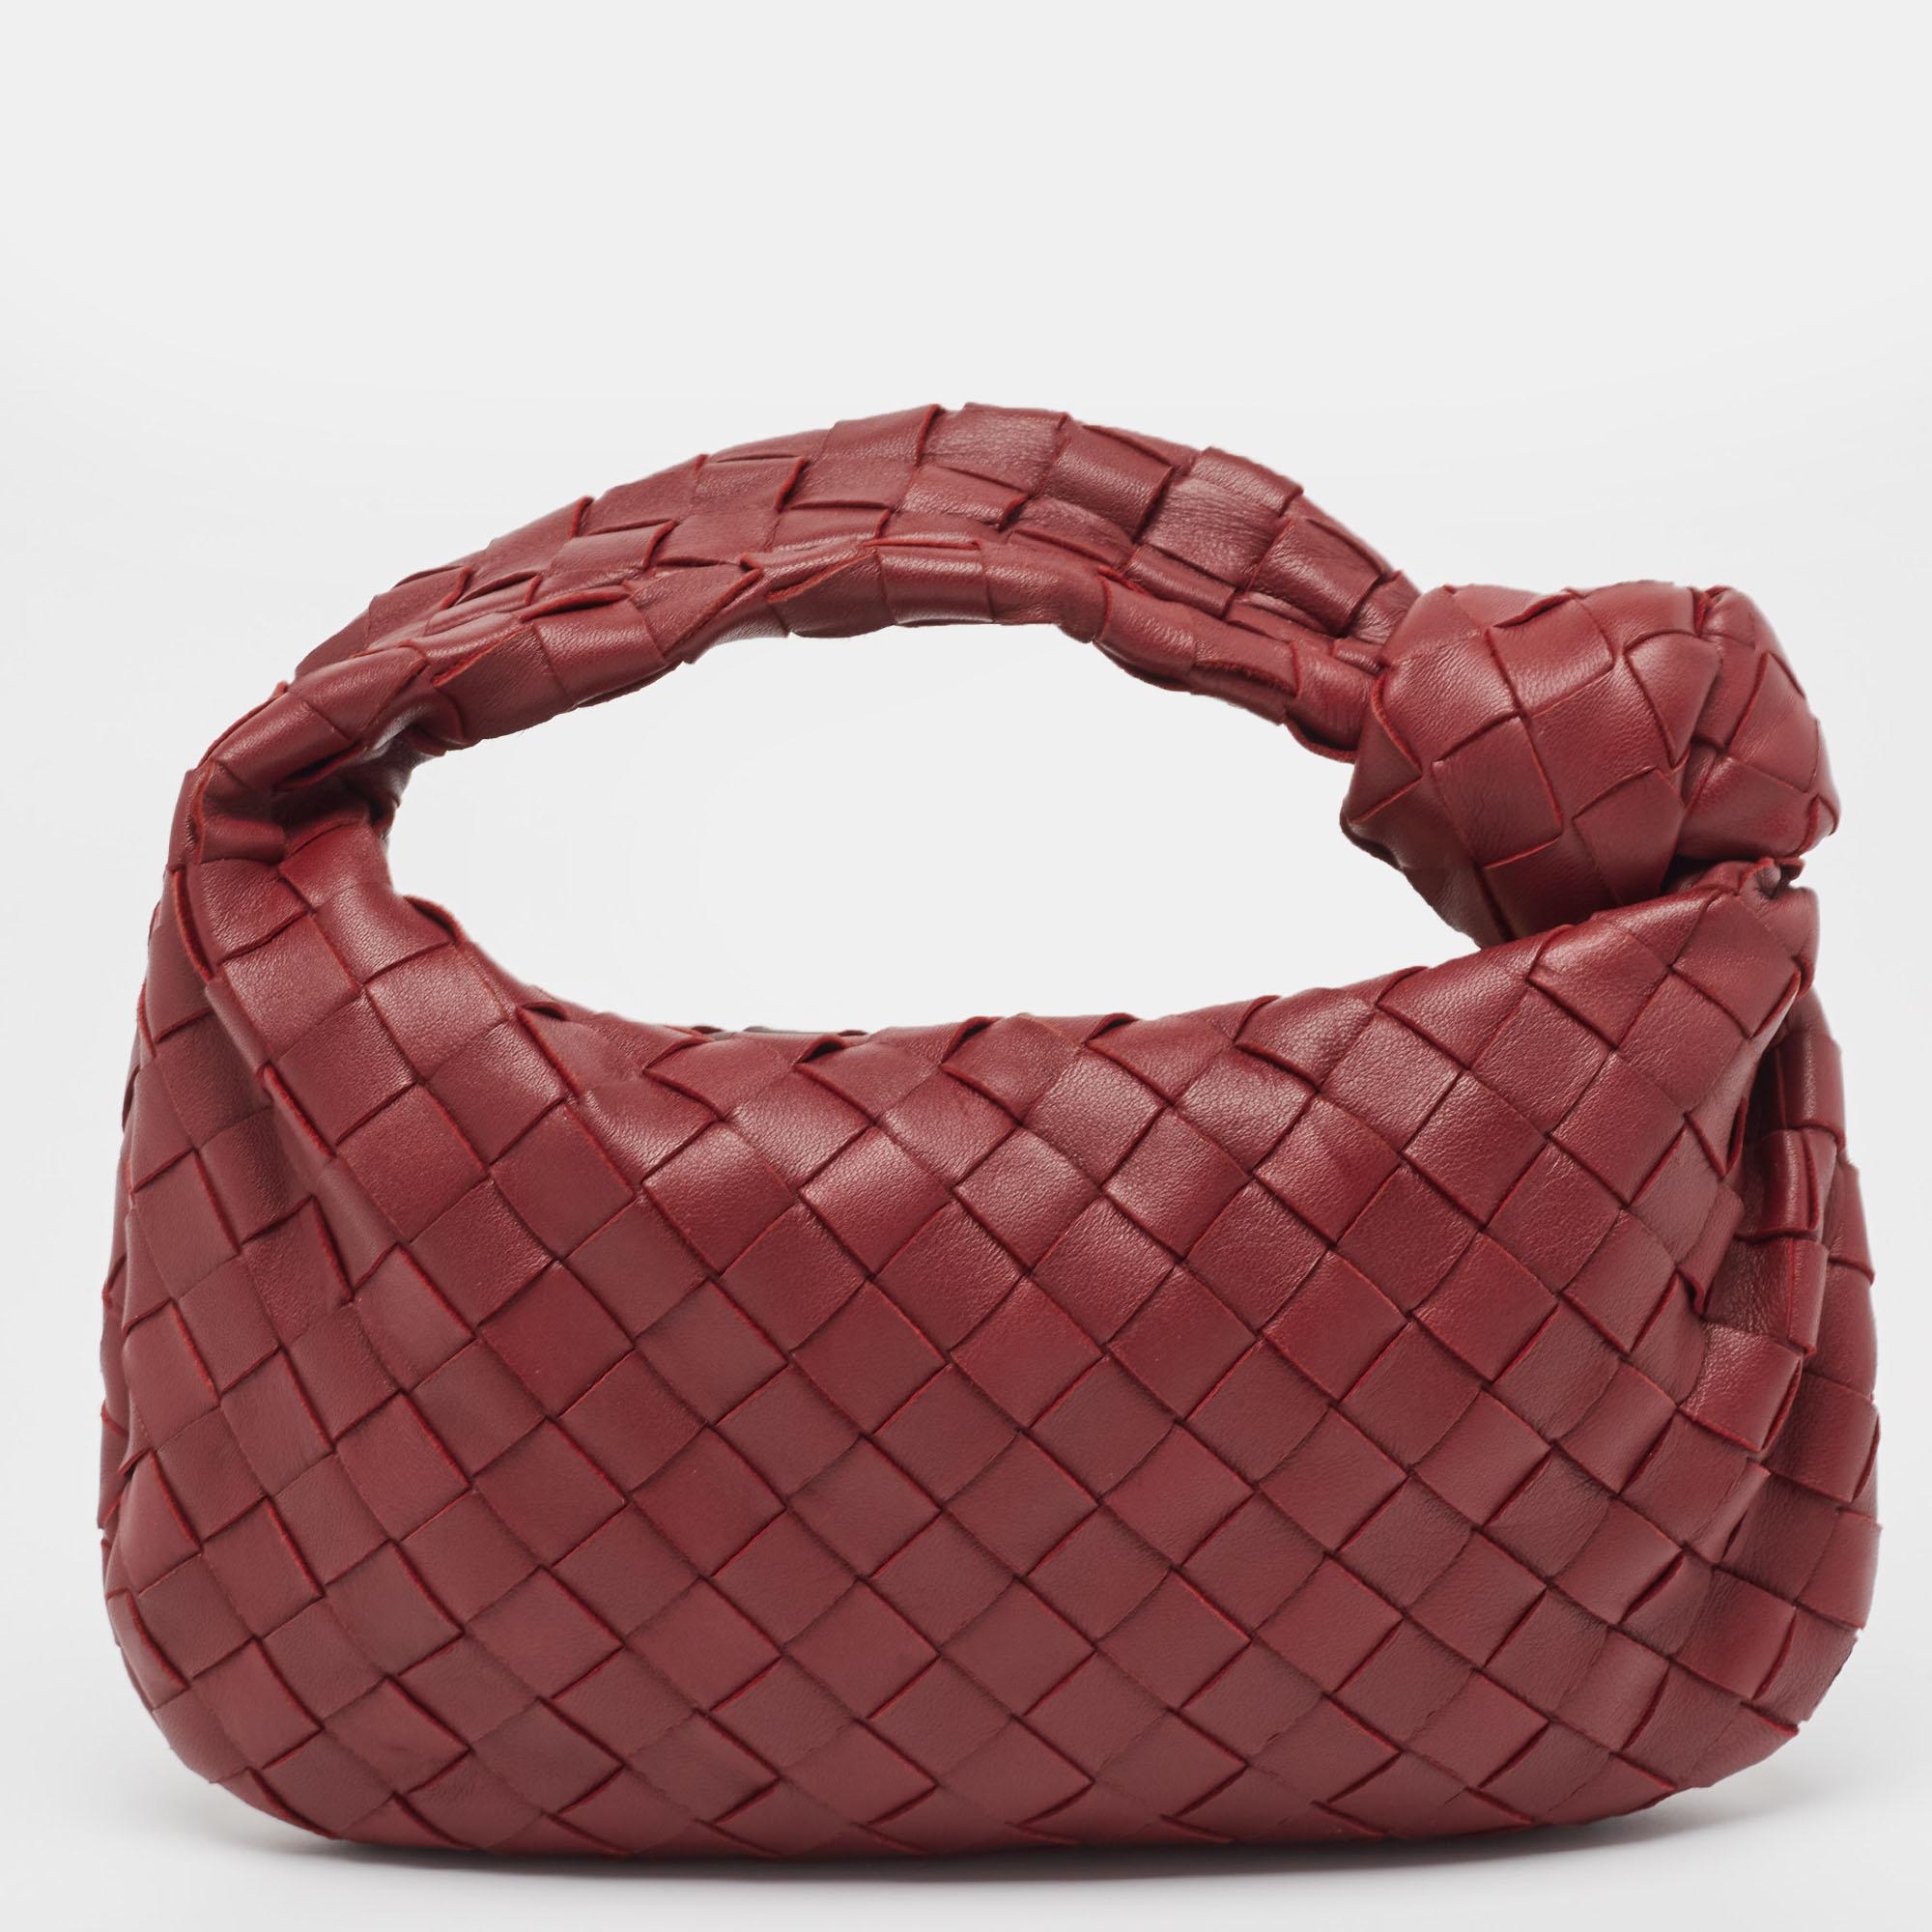 Le sac JODI de Bottega Veneta est réalisé en cuir selon la technique de tissage Intrecciato signature de la marque, pour une silhouette sans couture. Ce mini sac, qui incarne l'élégance et le charme subtil, est retenu par une anse nouée. Le sac est